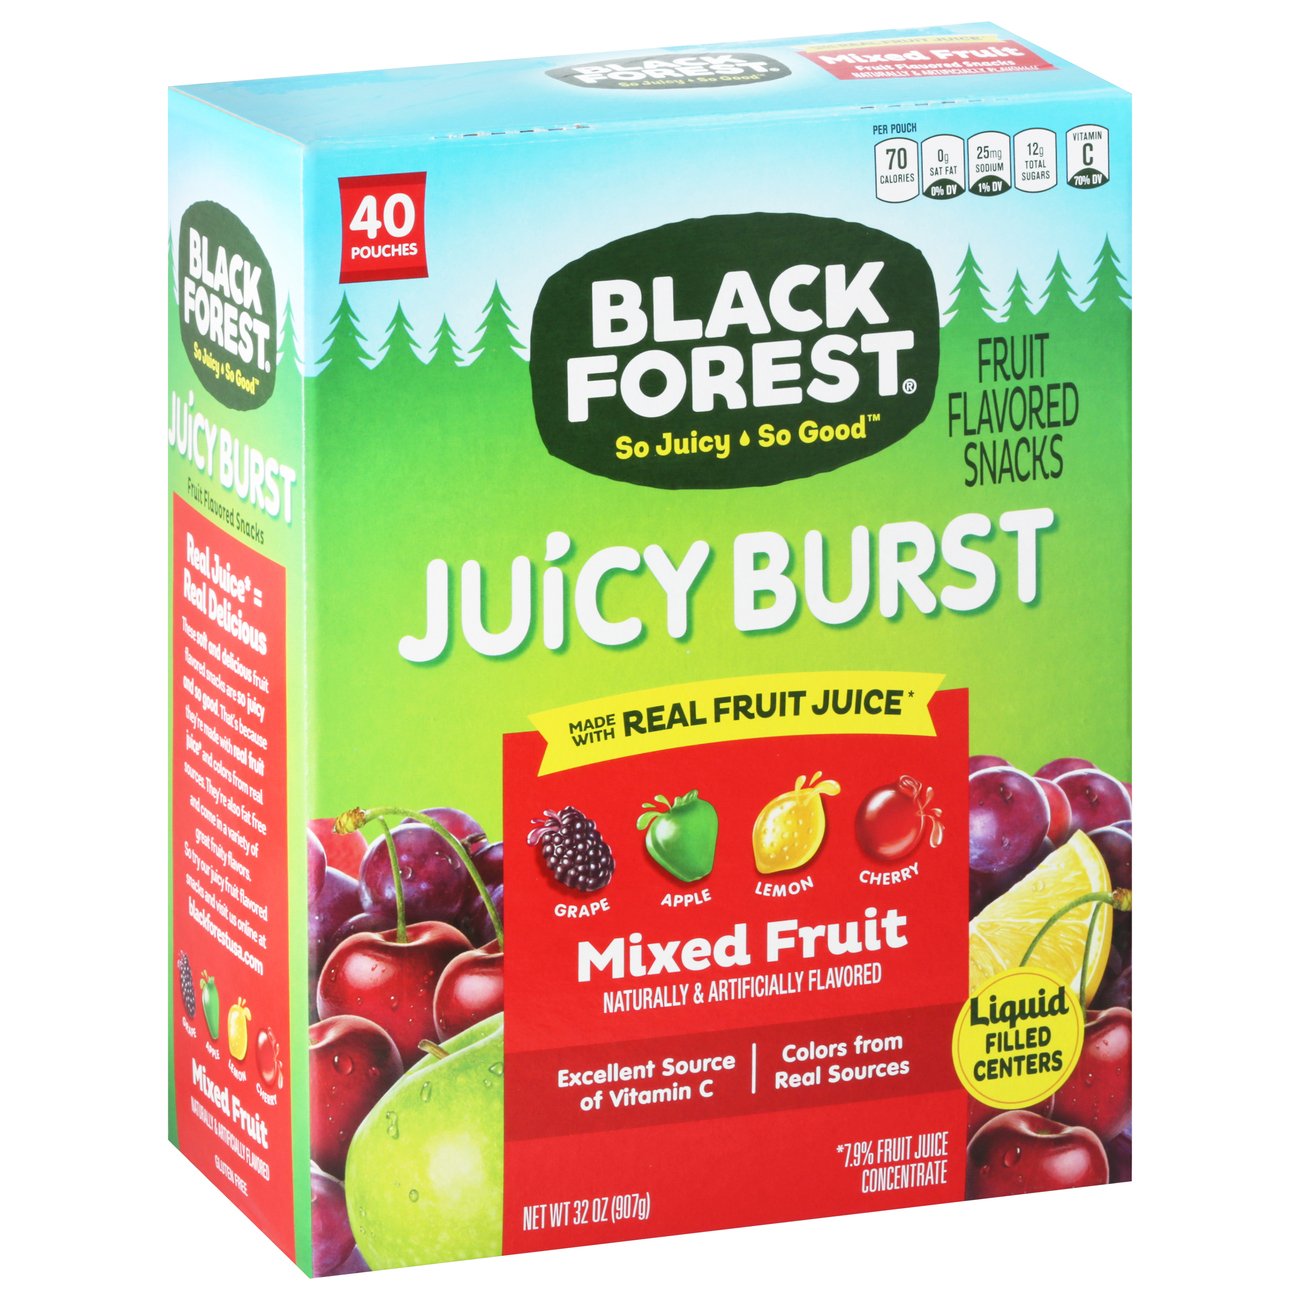 Black Forest Fruit Snacks - Shop Fruit Snacks at H-E-B